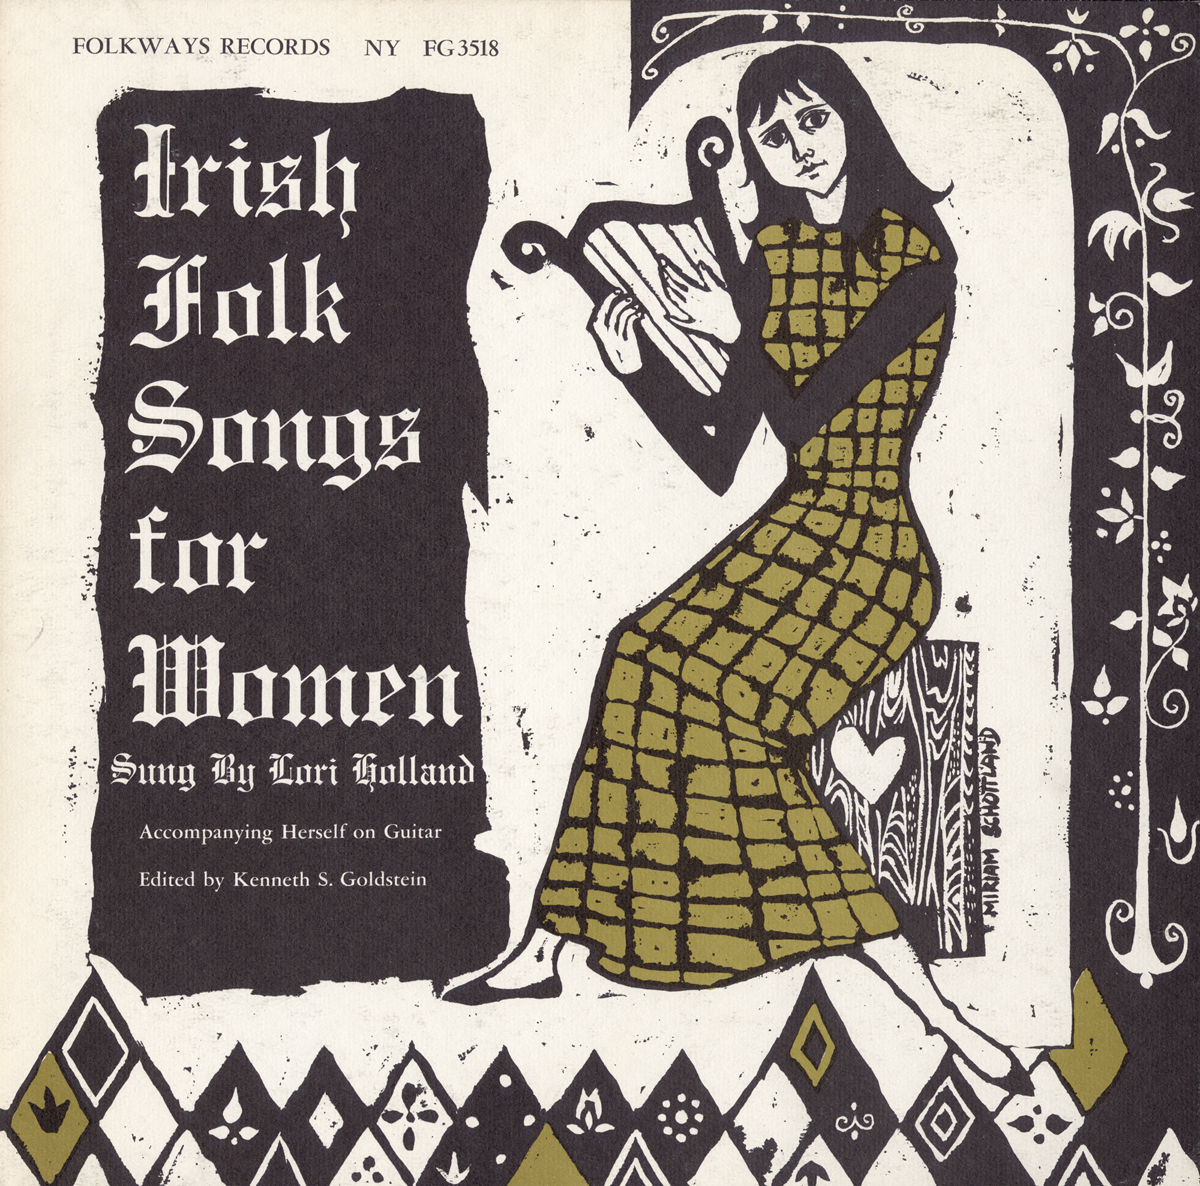 IRISH FOLK SONGS FOR WOMEN, VOL. 2